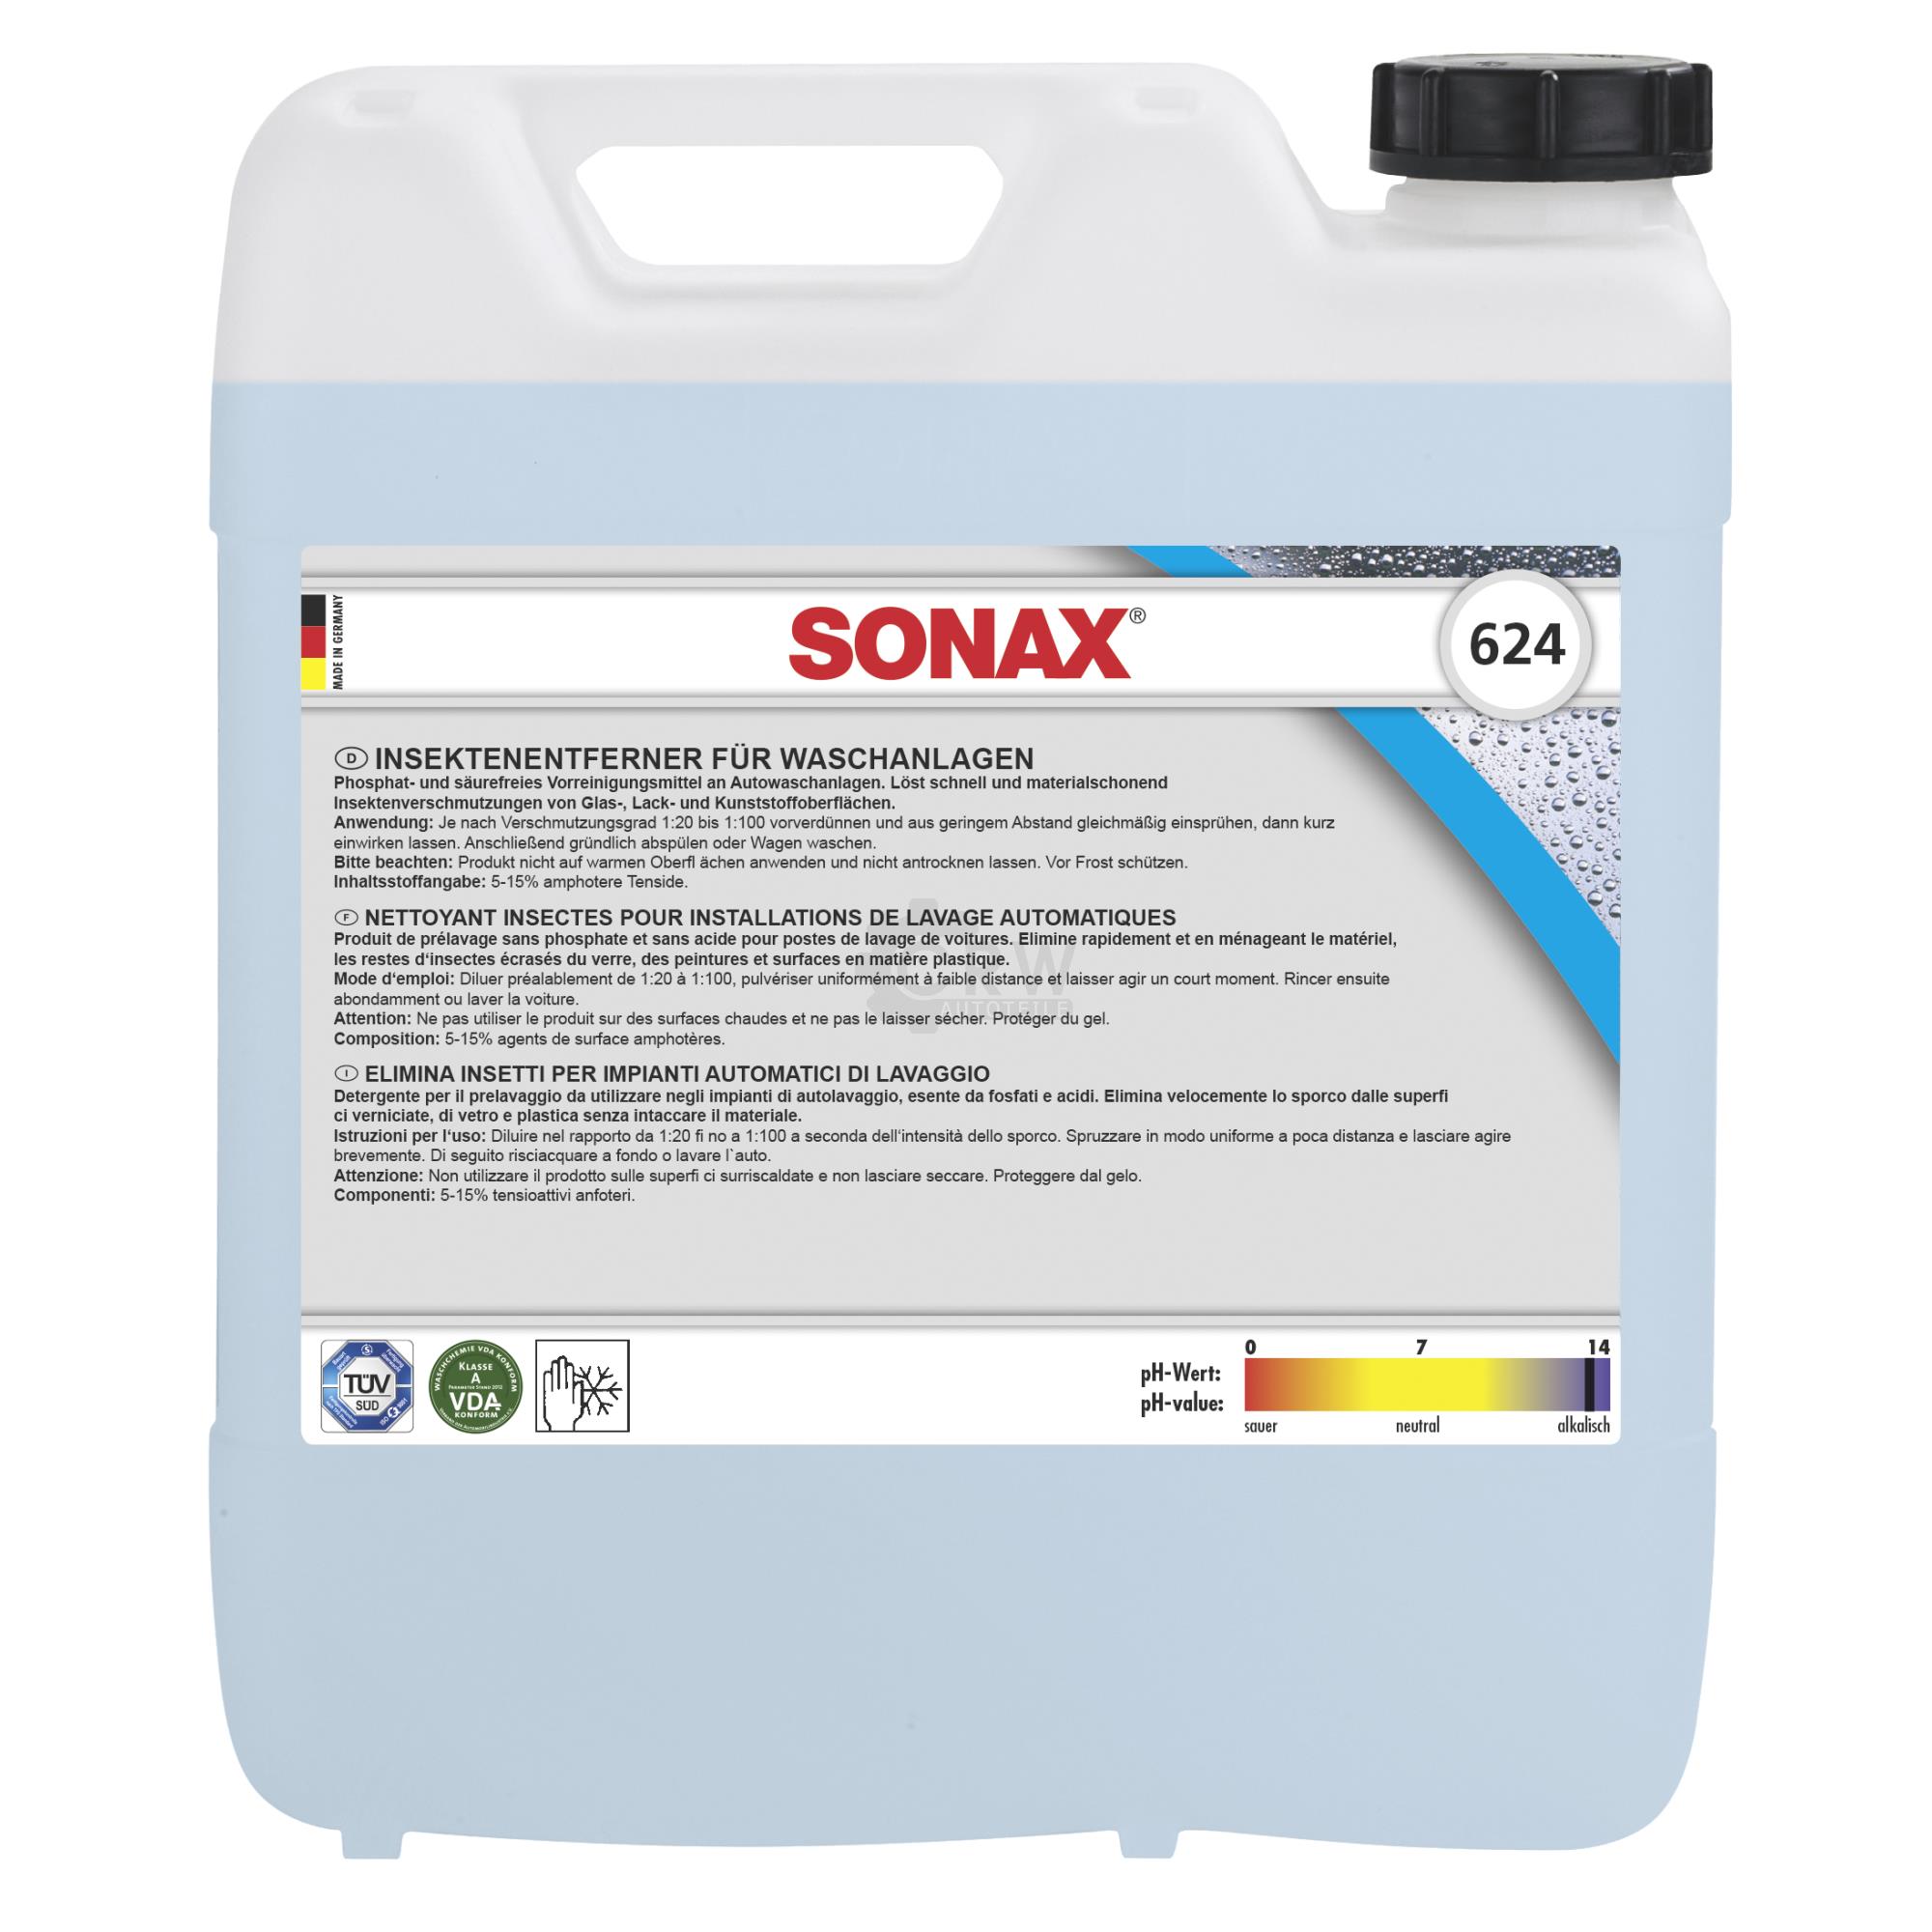 SONAX InsektenEntferner für Waschanlagen säurefrei phosphatfrei 10 L